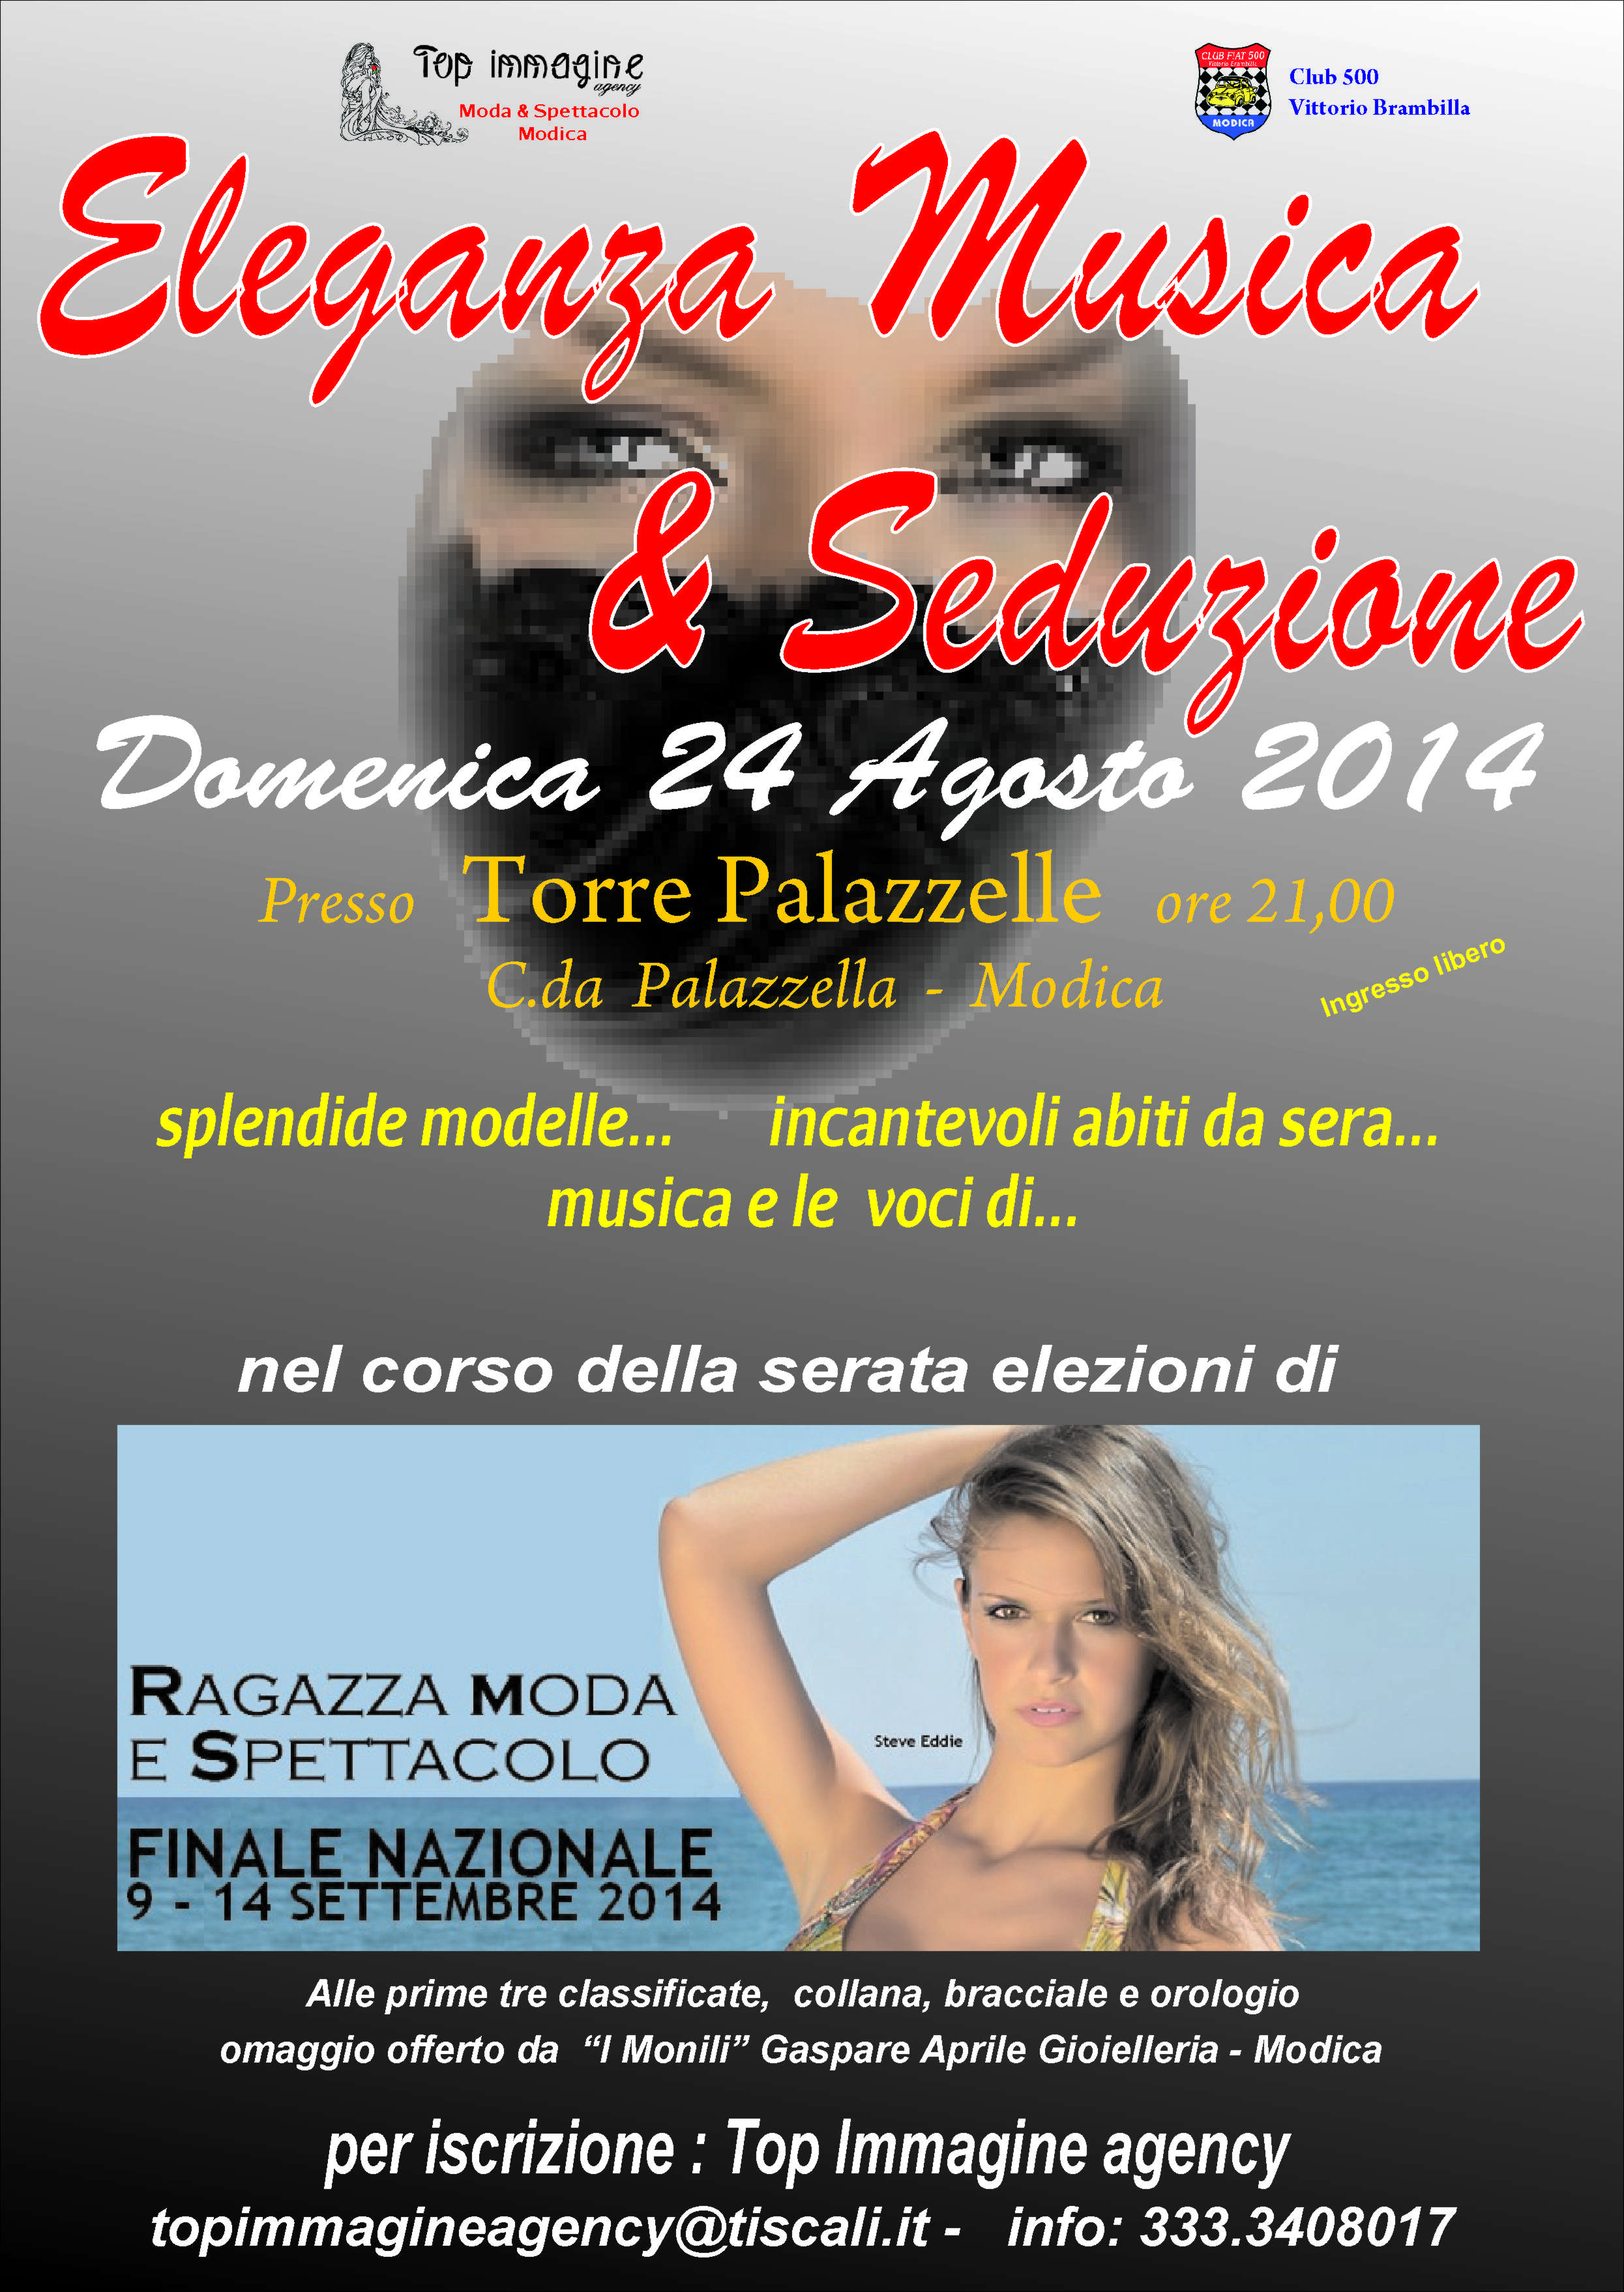  “Eleganza, Musica & Seduzione”, il 24 agosto modelle e auto d’epoca a Torre Palazzelle